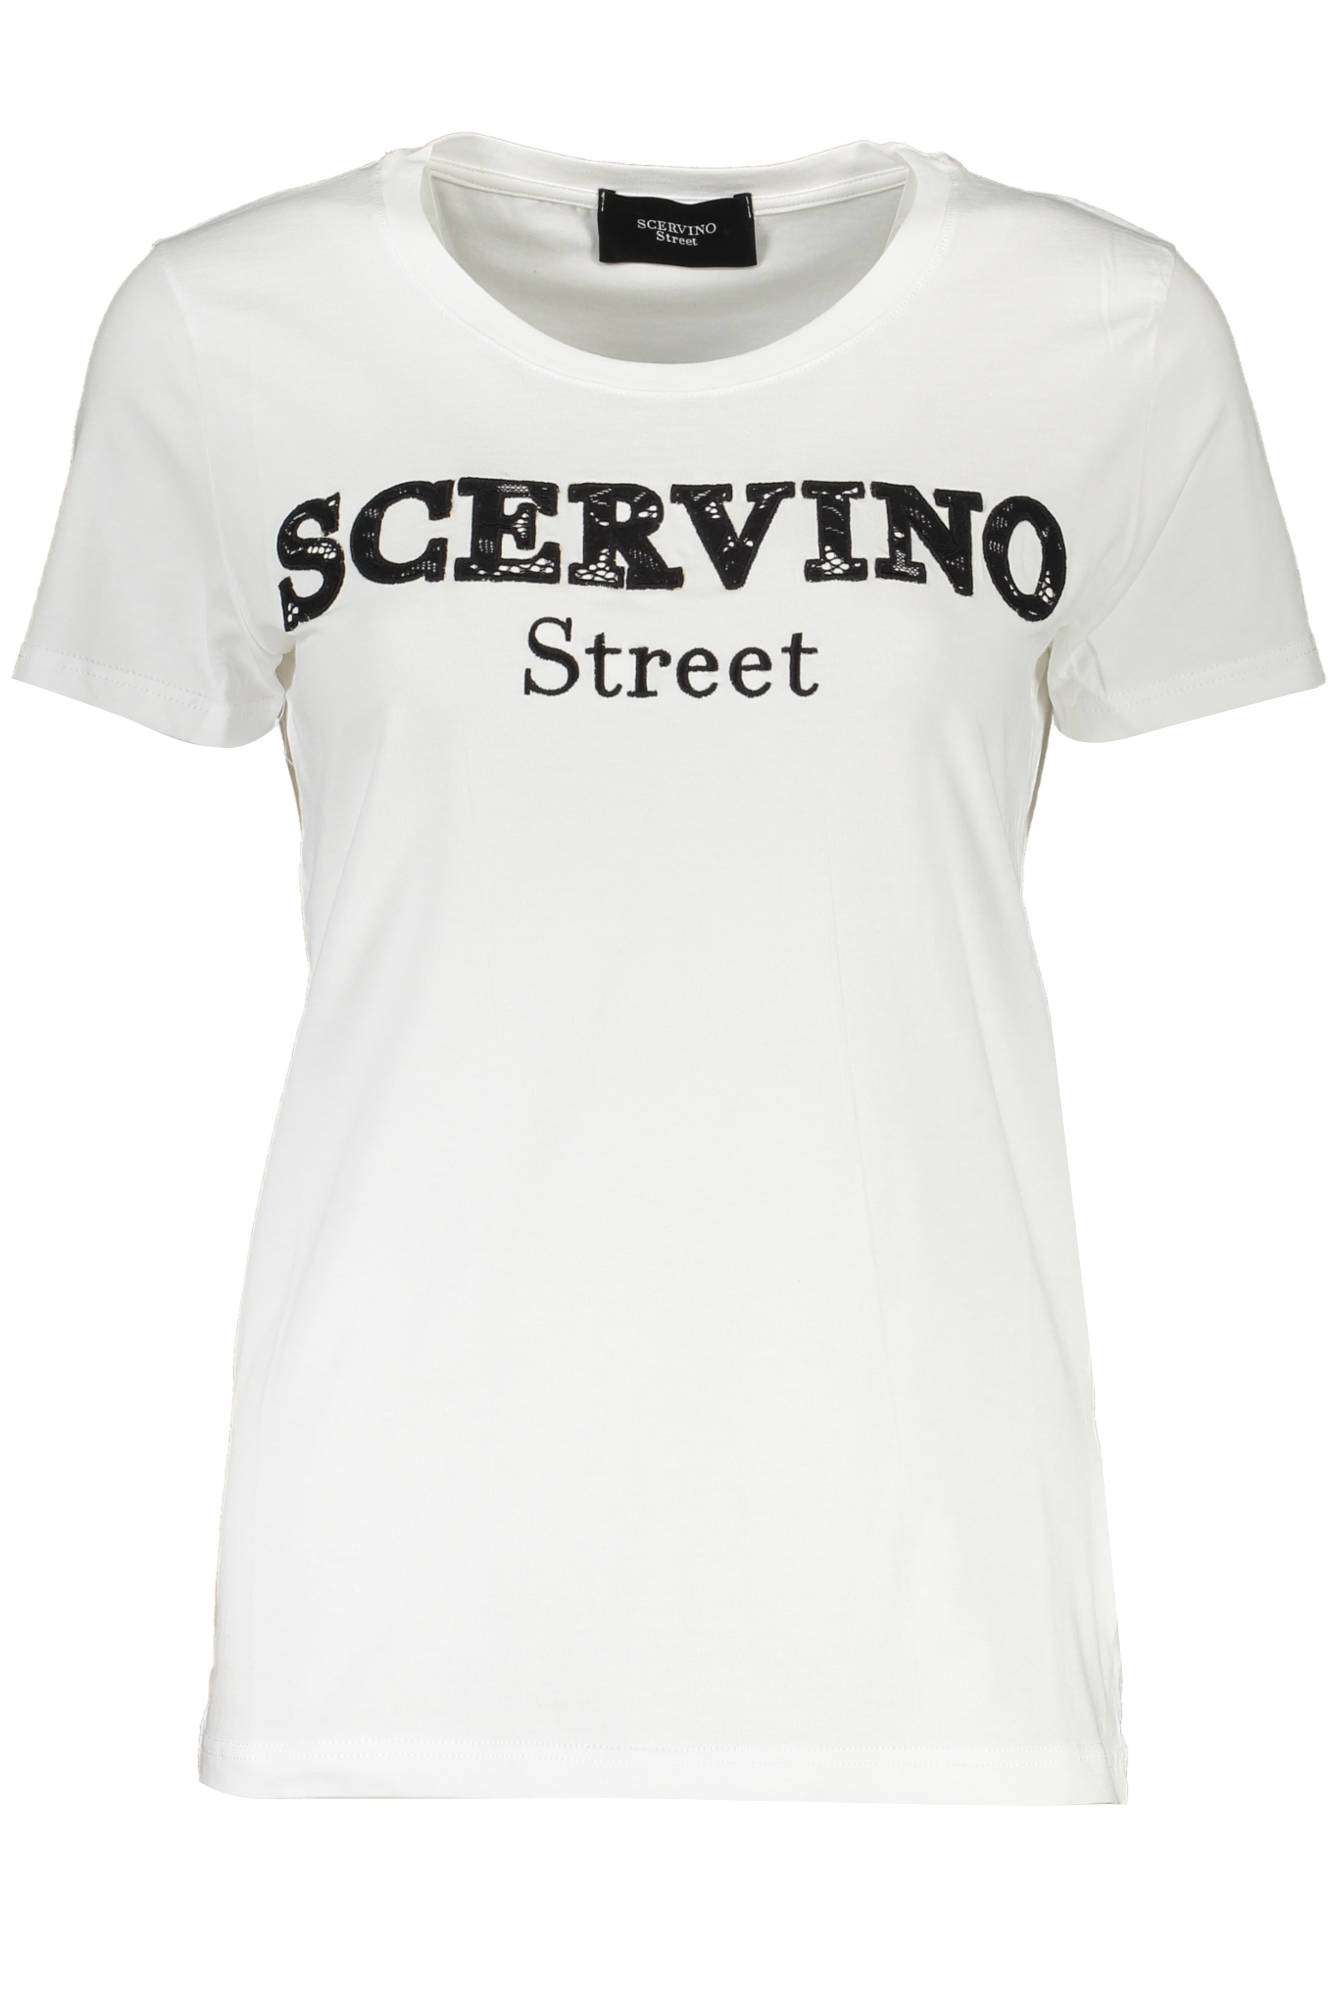 SCERVINO STREET tričko s krátkým rukávem BIANCO